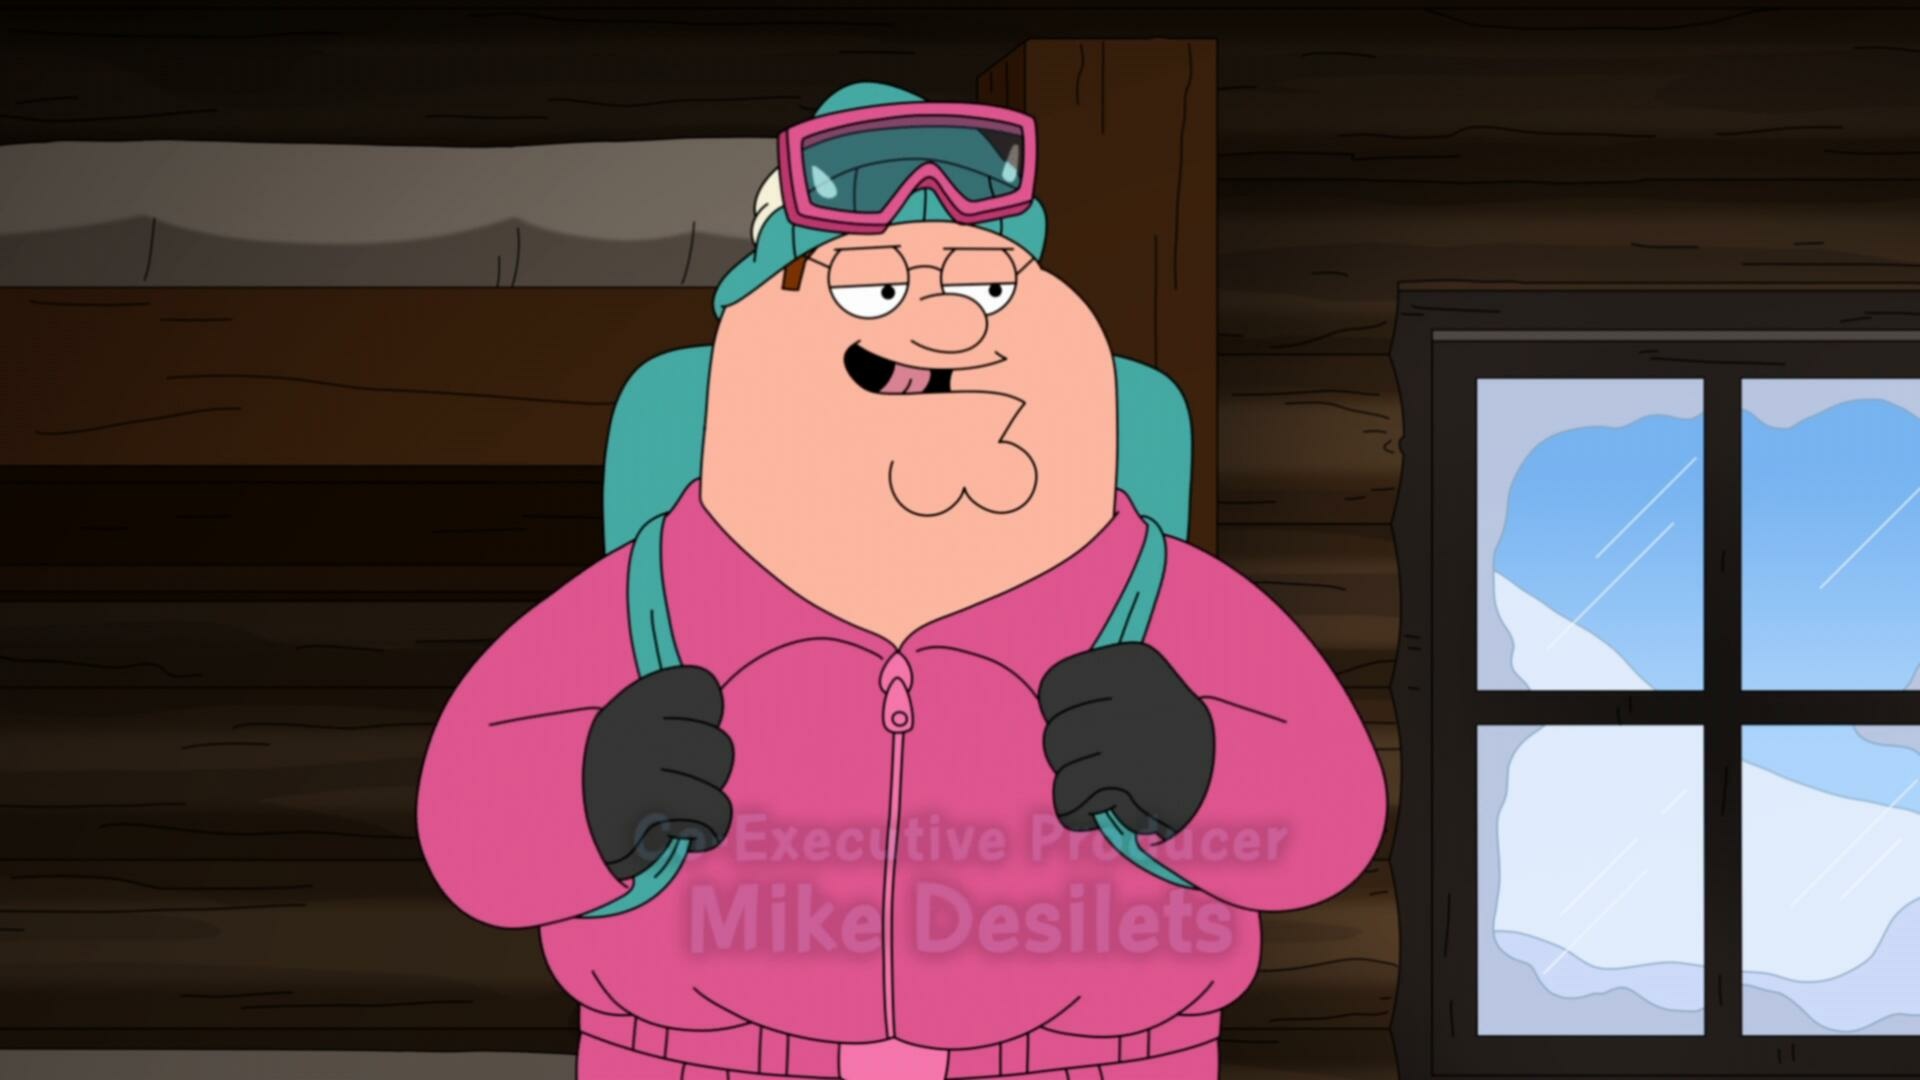 Family Guy S22E12 1080p WEB H264 SuccessfulCrab TGx